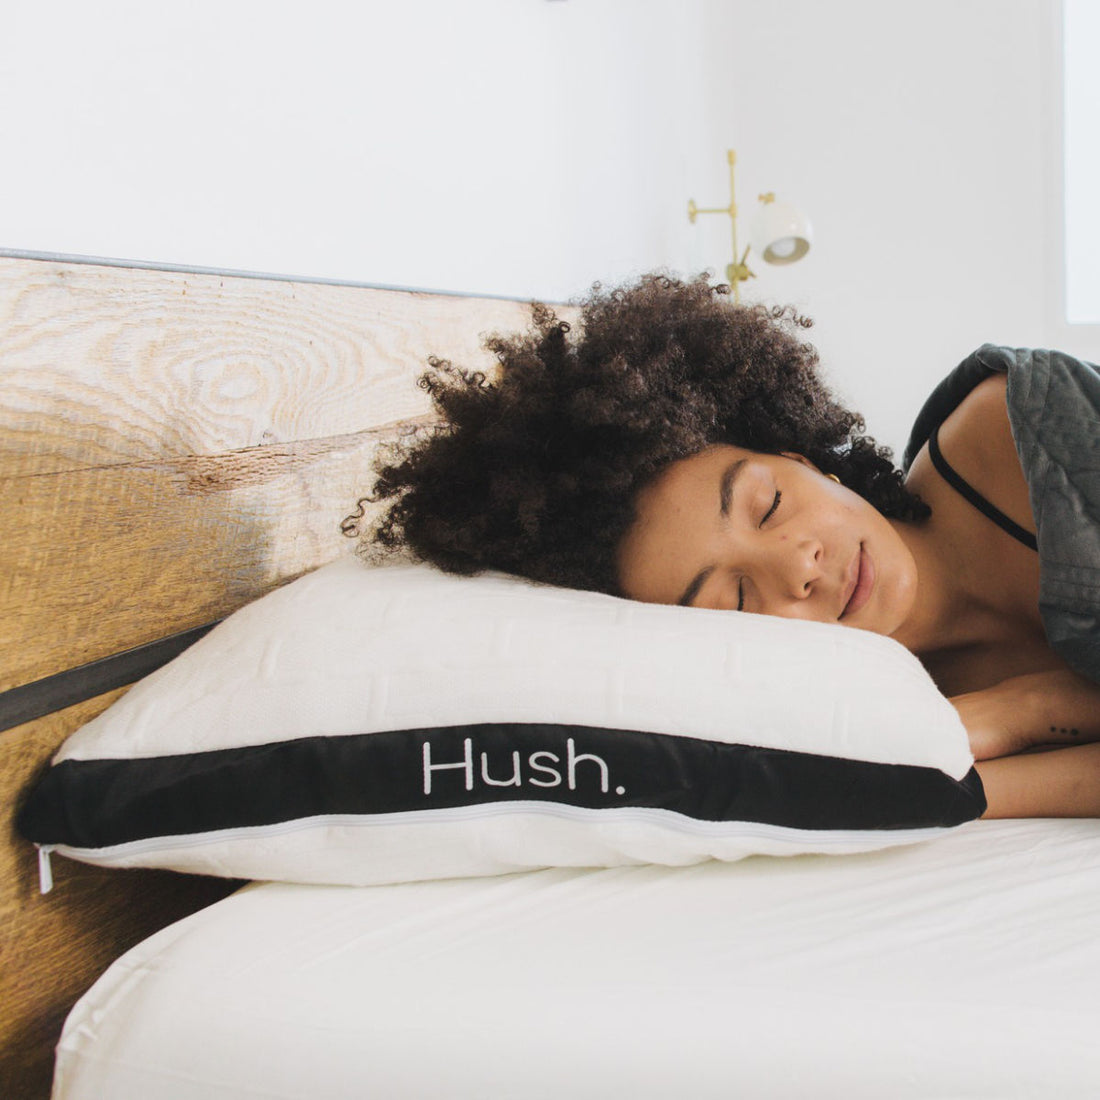 A woman sleeps soundly on the Hush mattress.